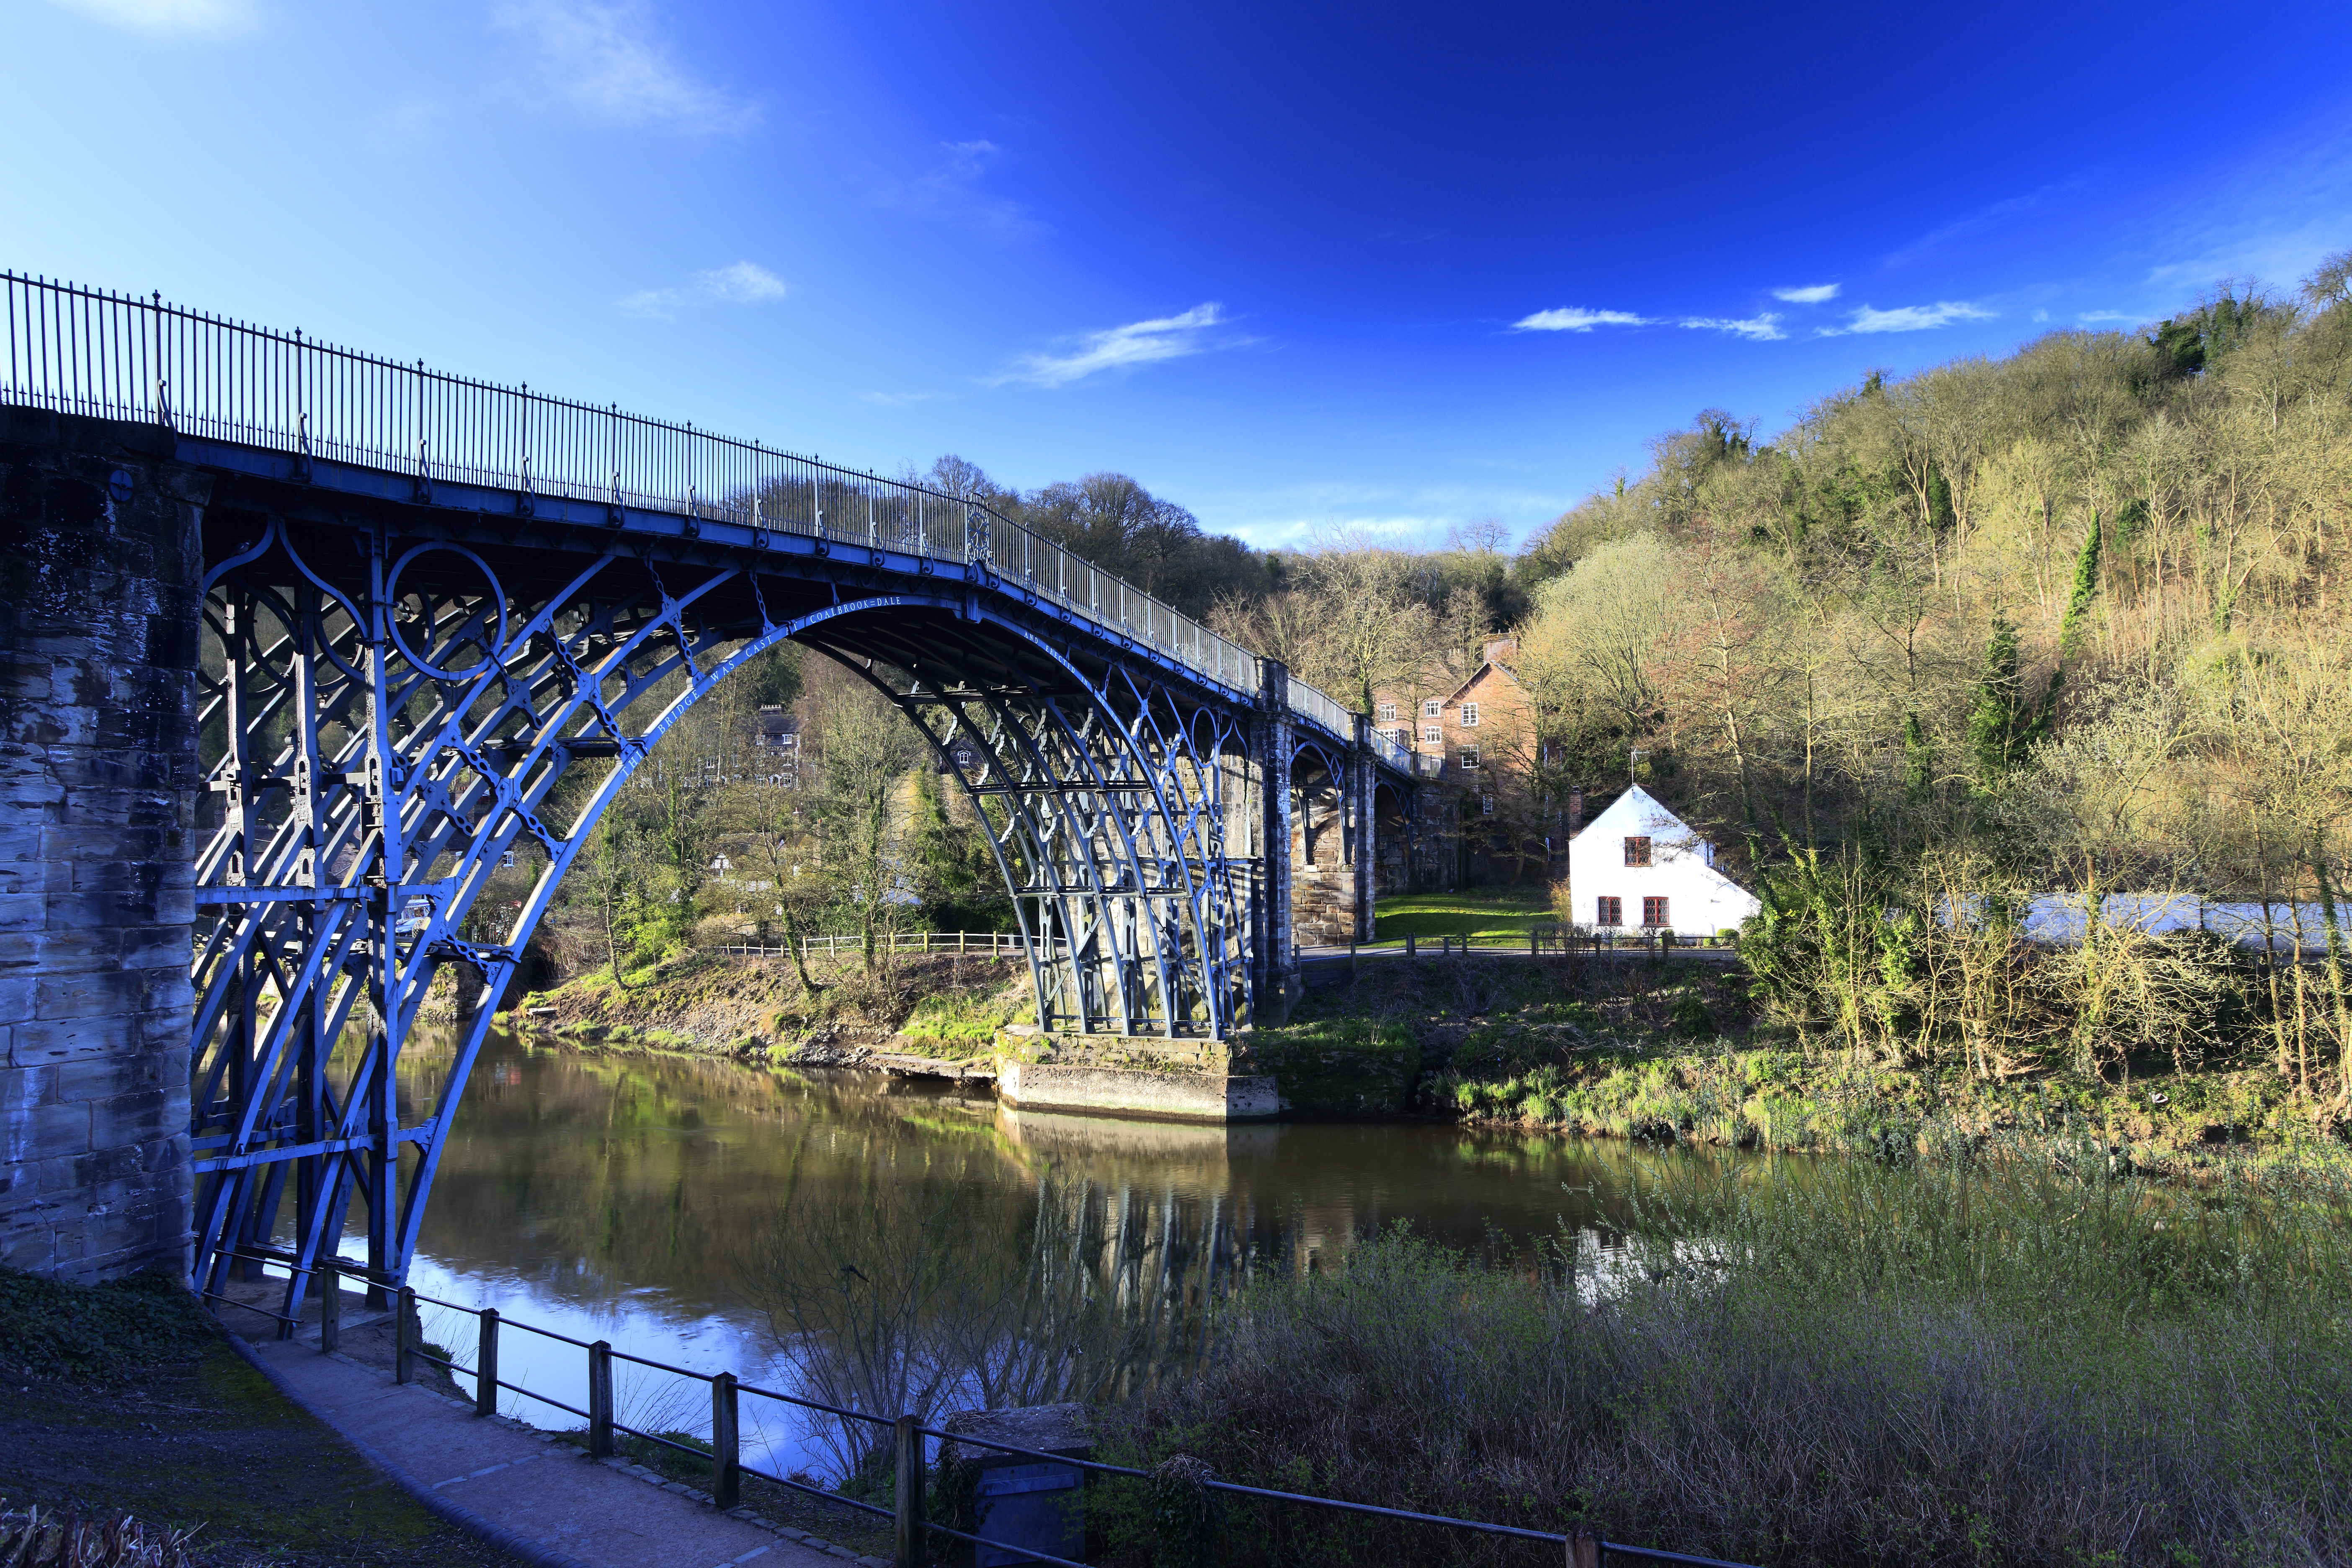 Shropshire verfügt über die erste gusseiserne Brücke der Welt, die den Fluss Severn überquert